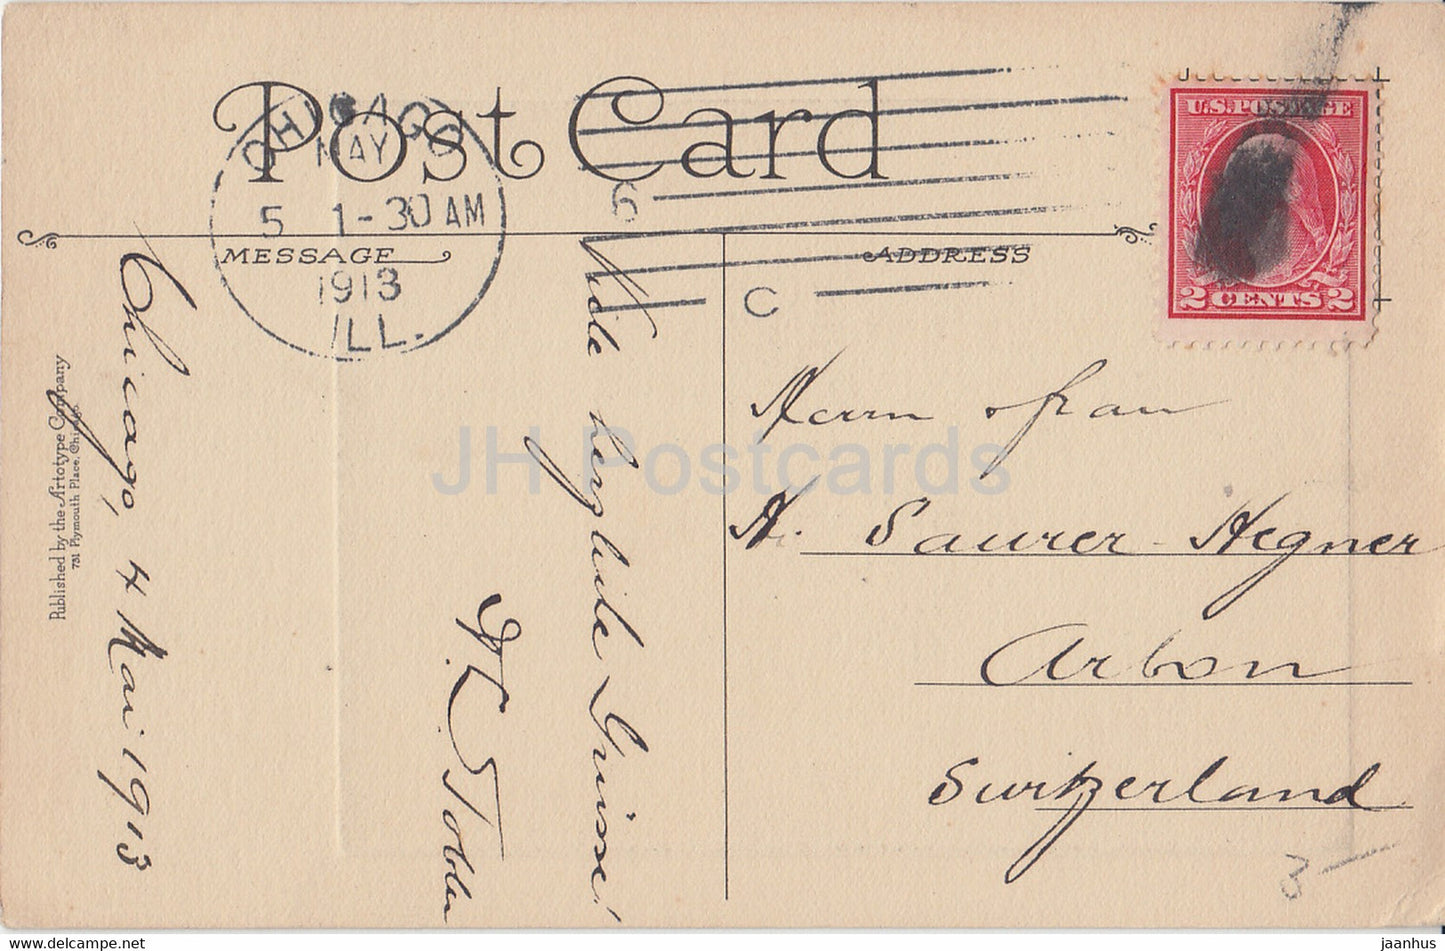 Freimaurertempel vom Fluss – Chicago River Series – Illinois – 22 – alte Postkarte – 1913 – Vereinigte Staaten USA – gebraucht